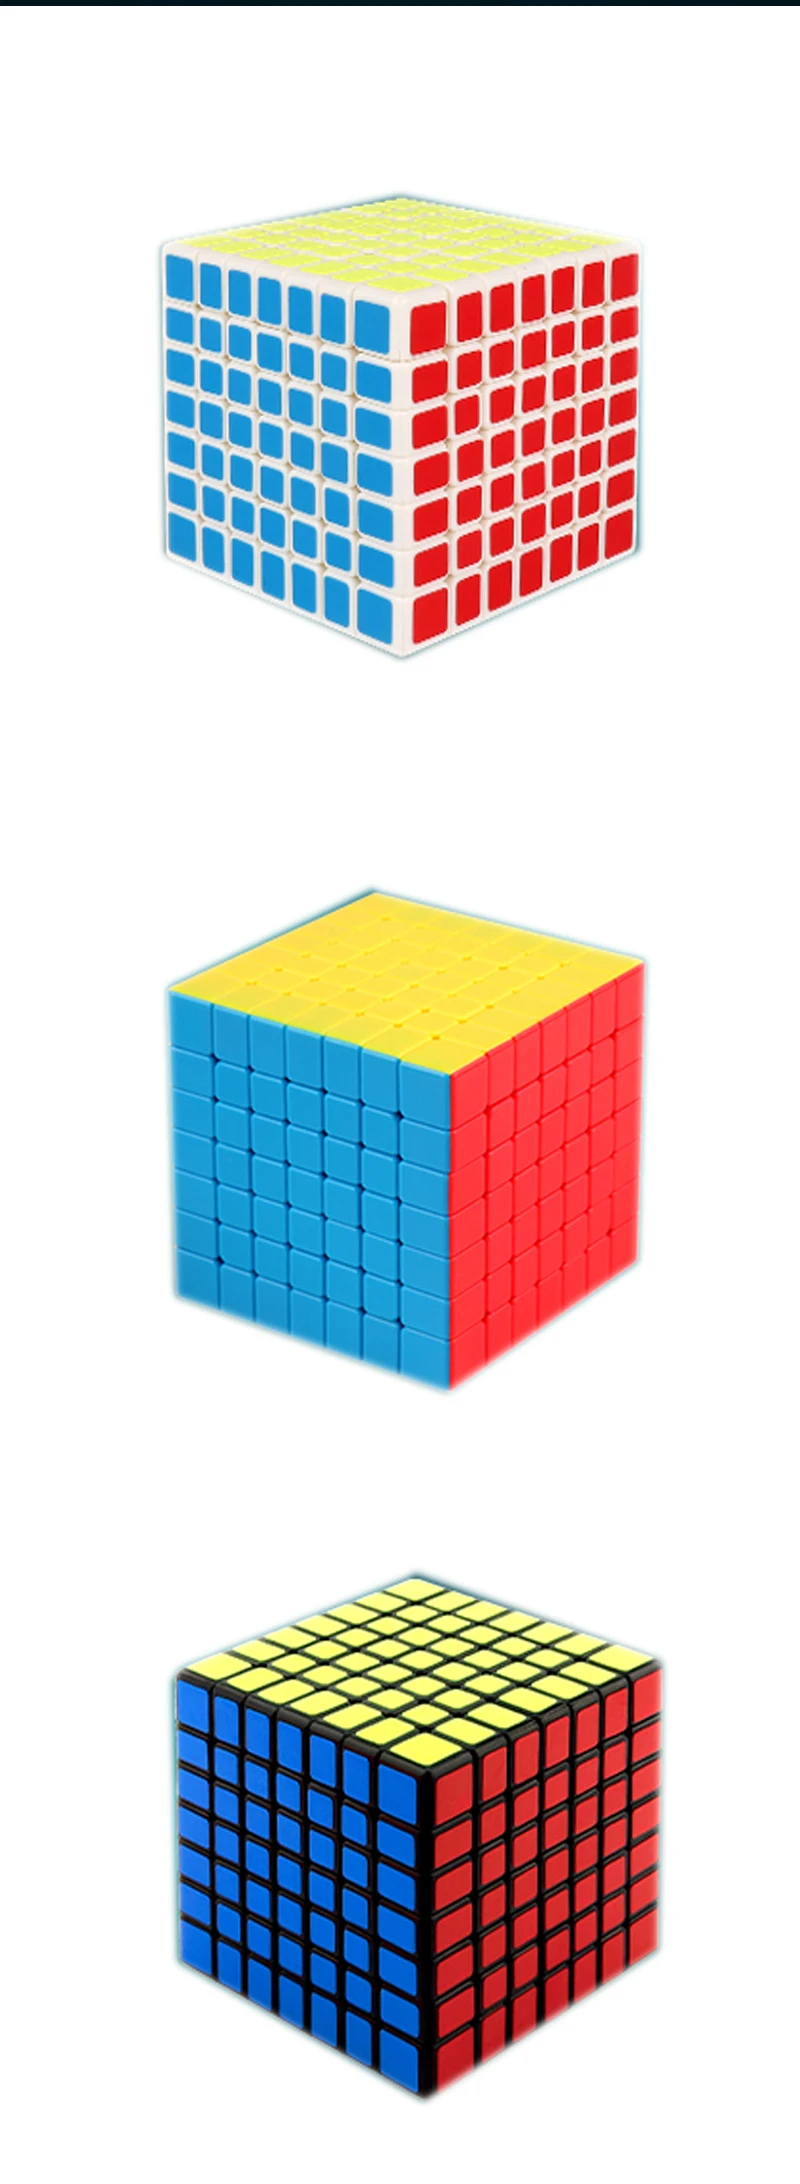 MOYU MeiLong neo 7 x7x7 куб Волшебная головоломка профессиональная скорость многоцветные 66 мм кубики образование антистрессовые игрушки для детей